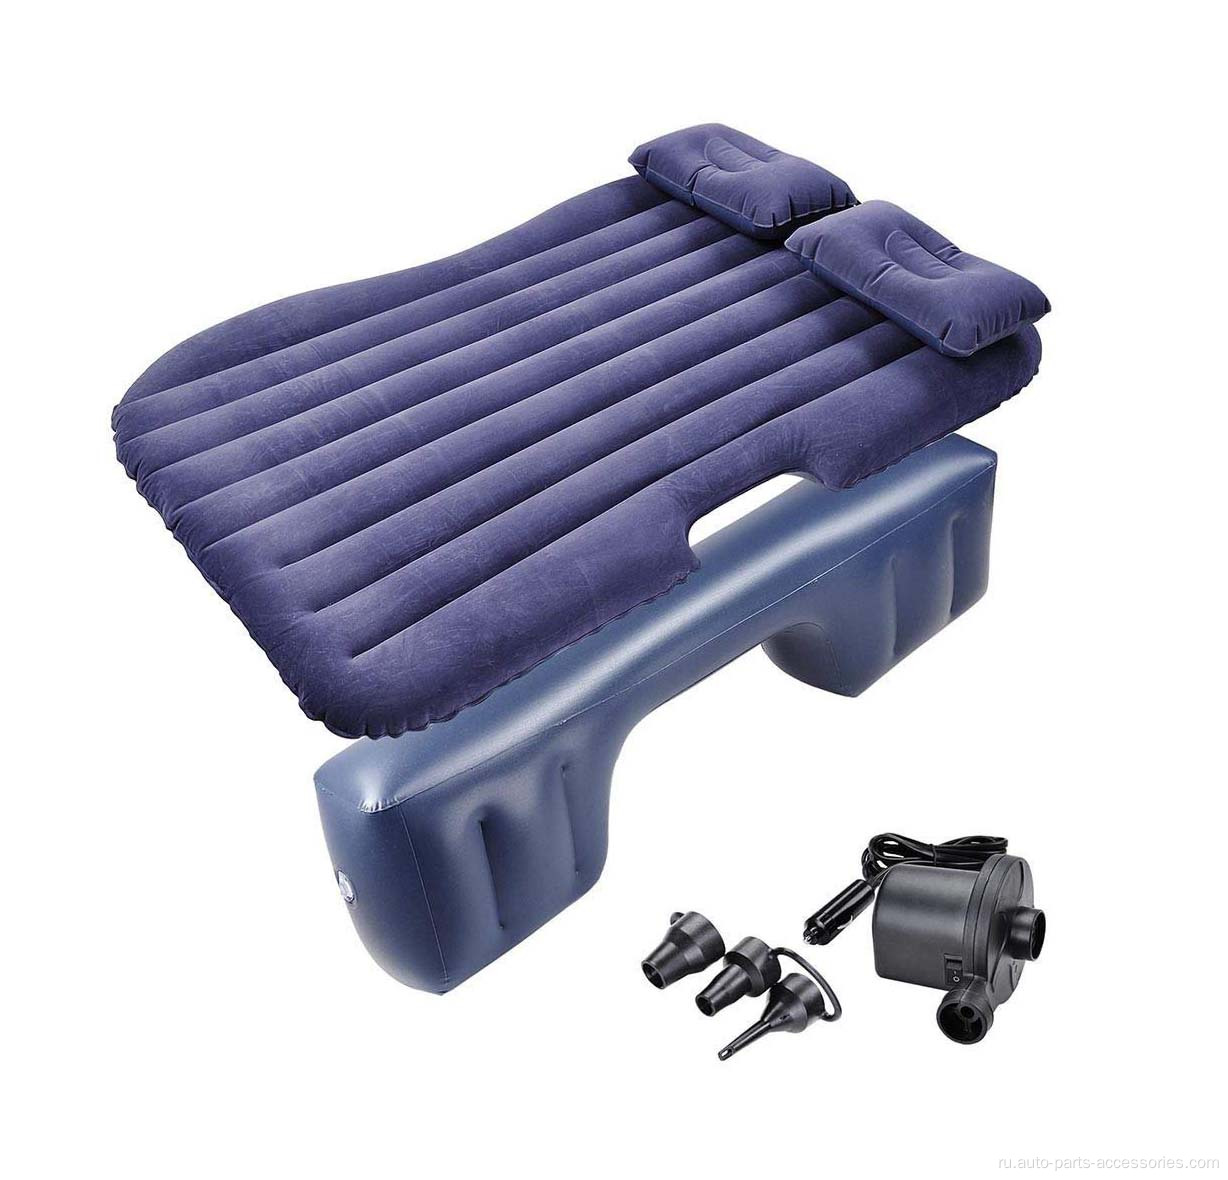 Автомобильная задняя сиденья на надувном матрасе с воздушной кроватью.